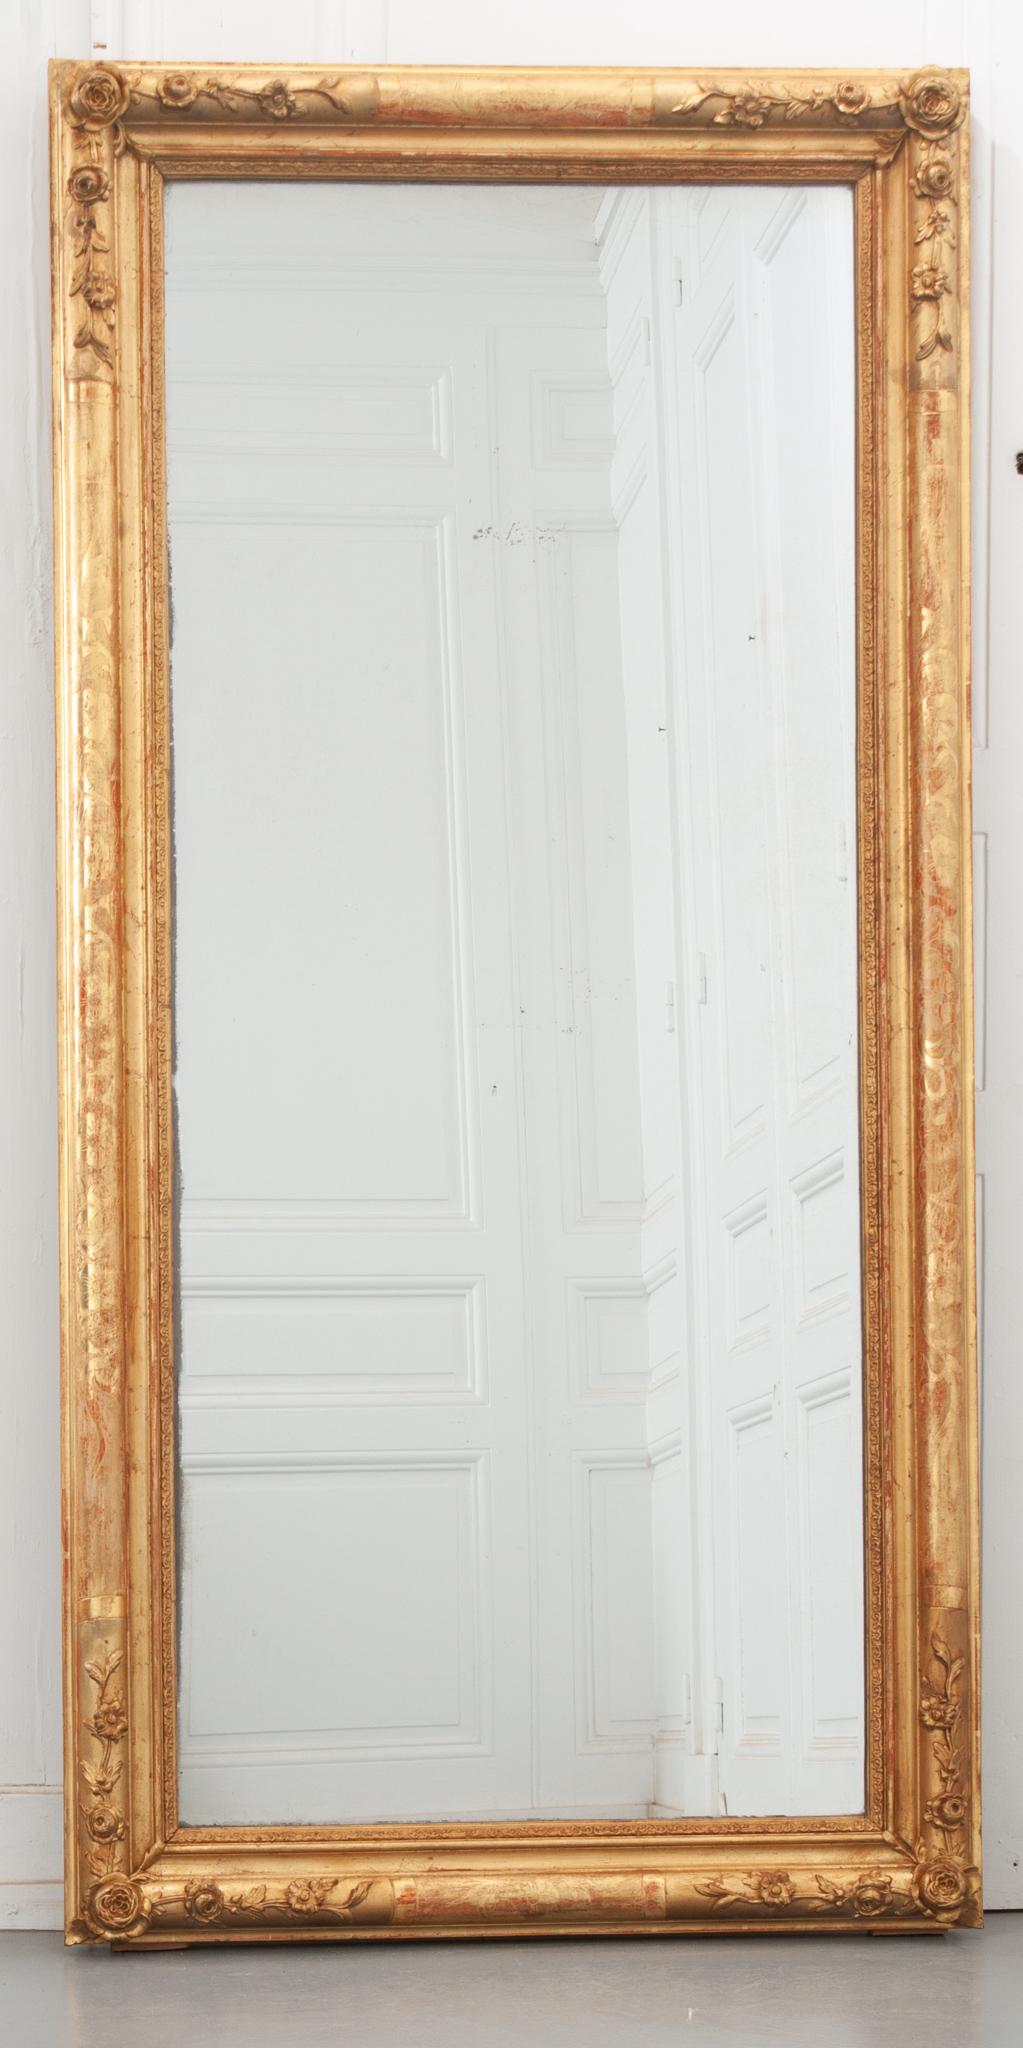 Dieser französische Spiegel aus dem 19. Jahrhundert ist voll von schönen floralen Details! Der rechteckige vergoldete Rahmen ist an allen Seiten mit floralen Ätzungen und Flachreliefschnitzereien in jeder Ecke verziert. Im Laufe der Jahre getragen,